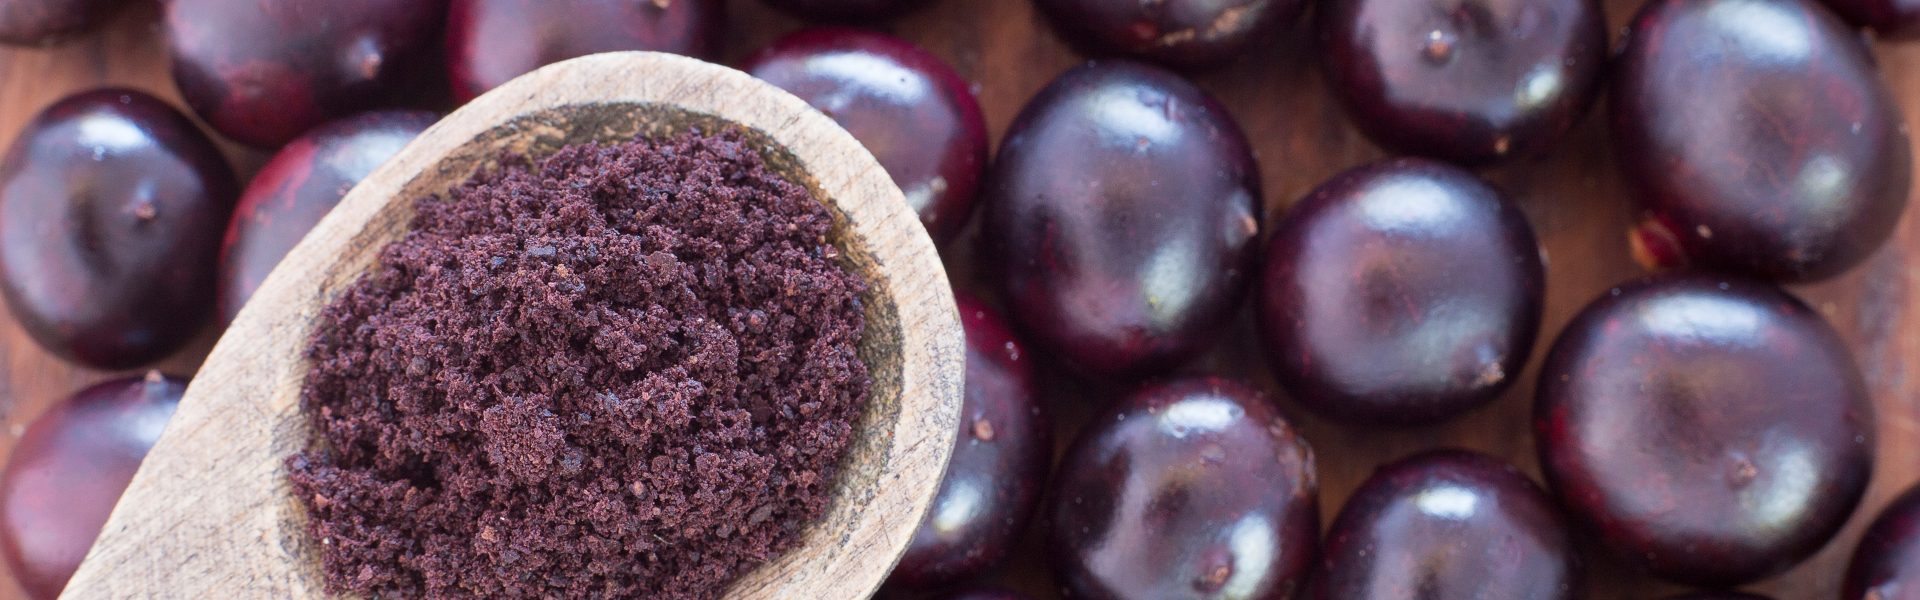 Ovocie farby fialky: extra chuť a výnimočné zdravotné účinky